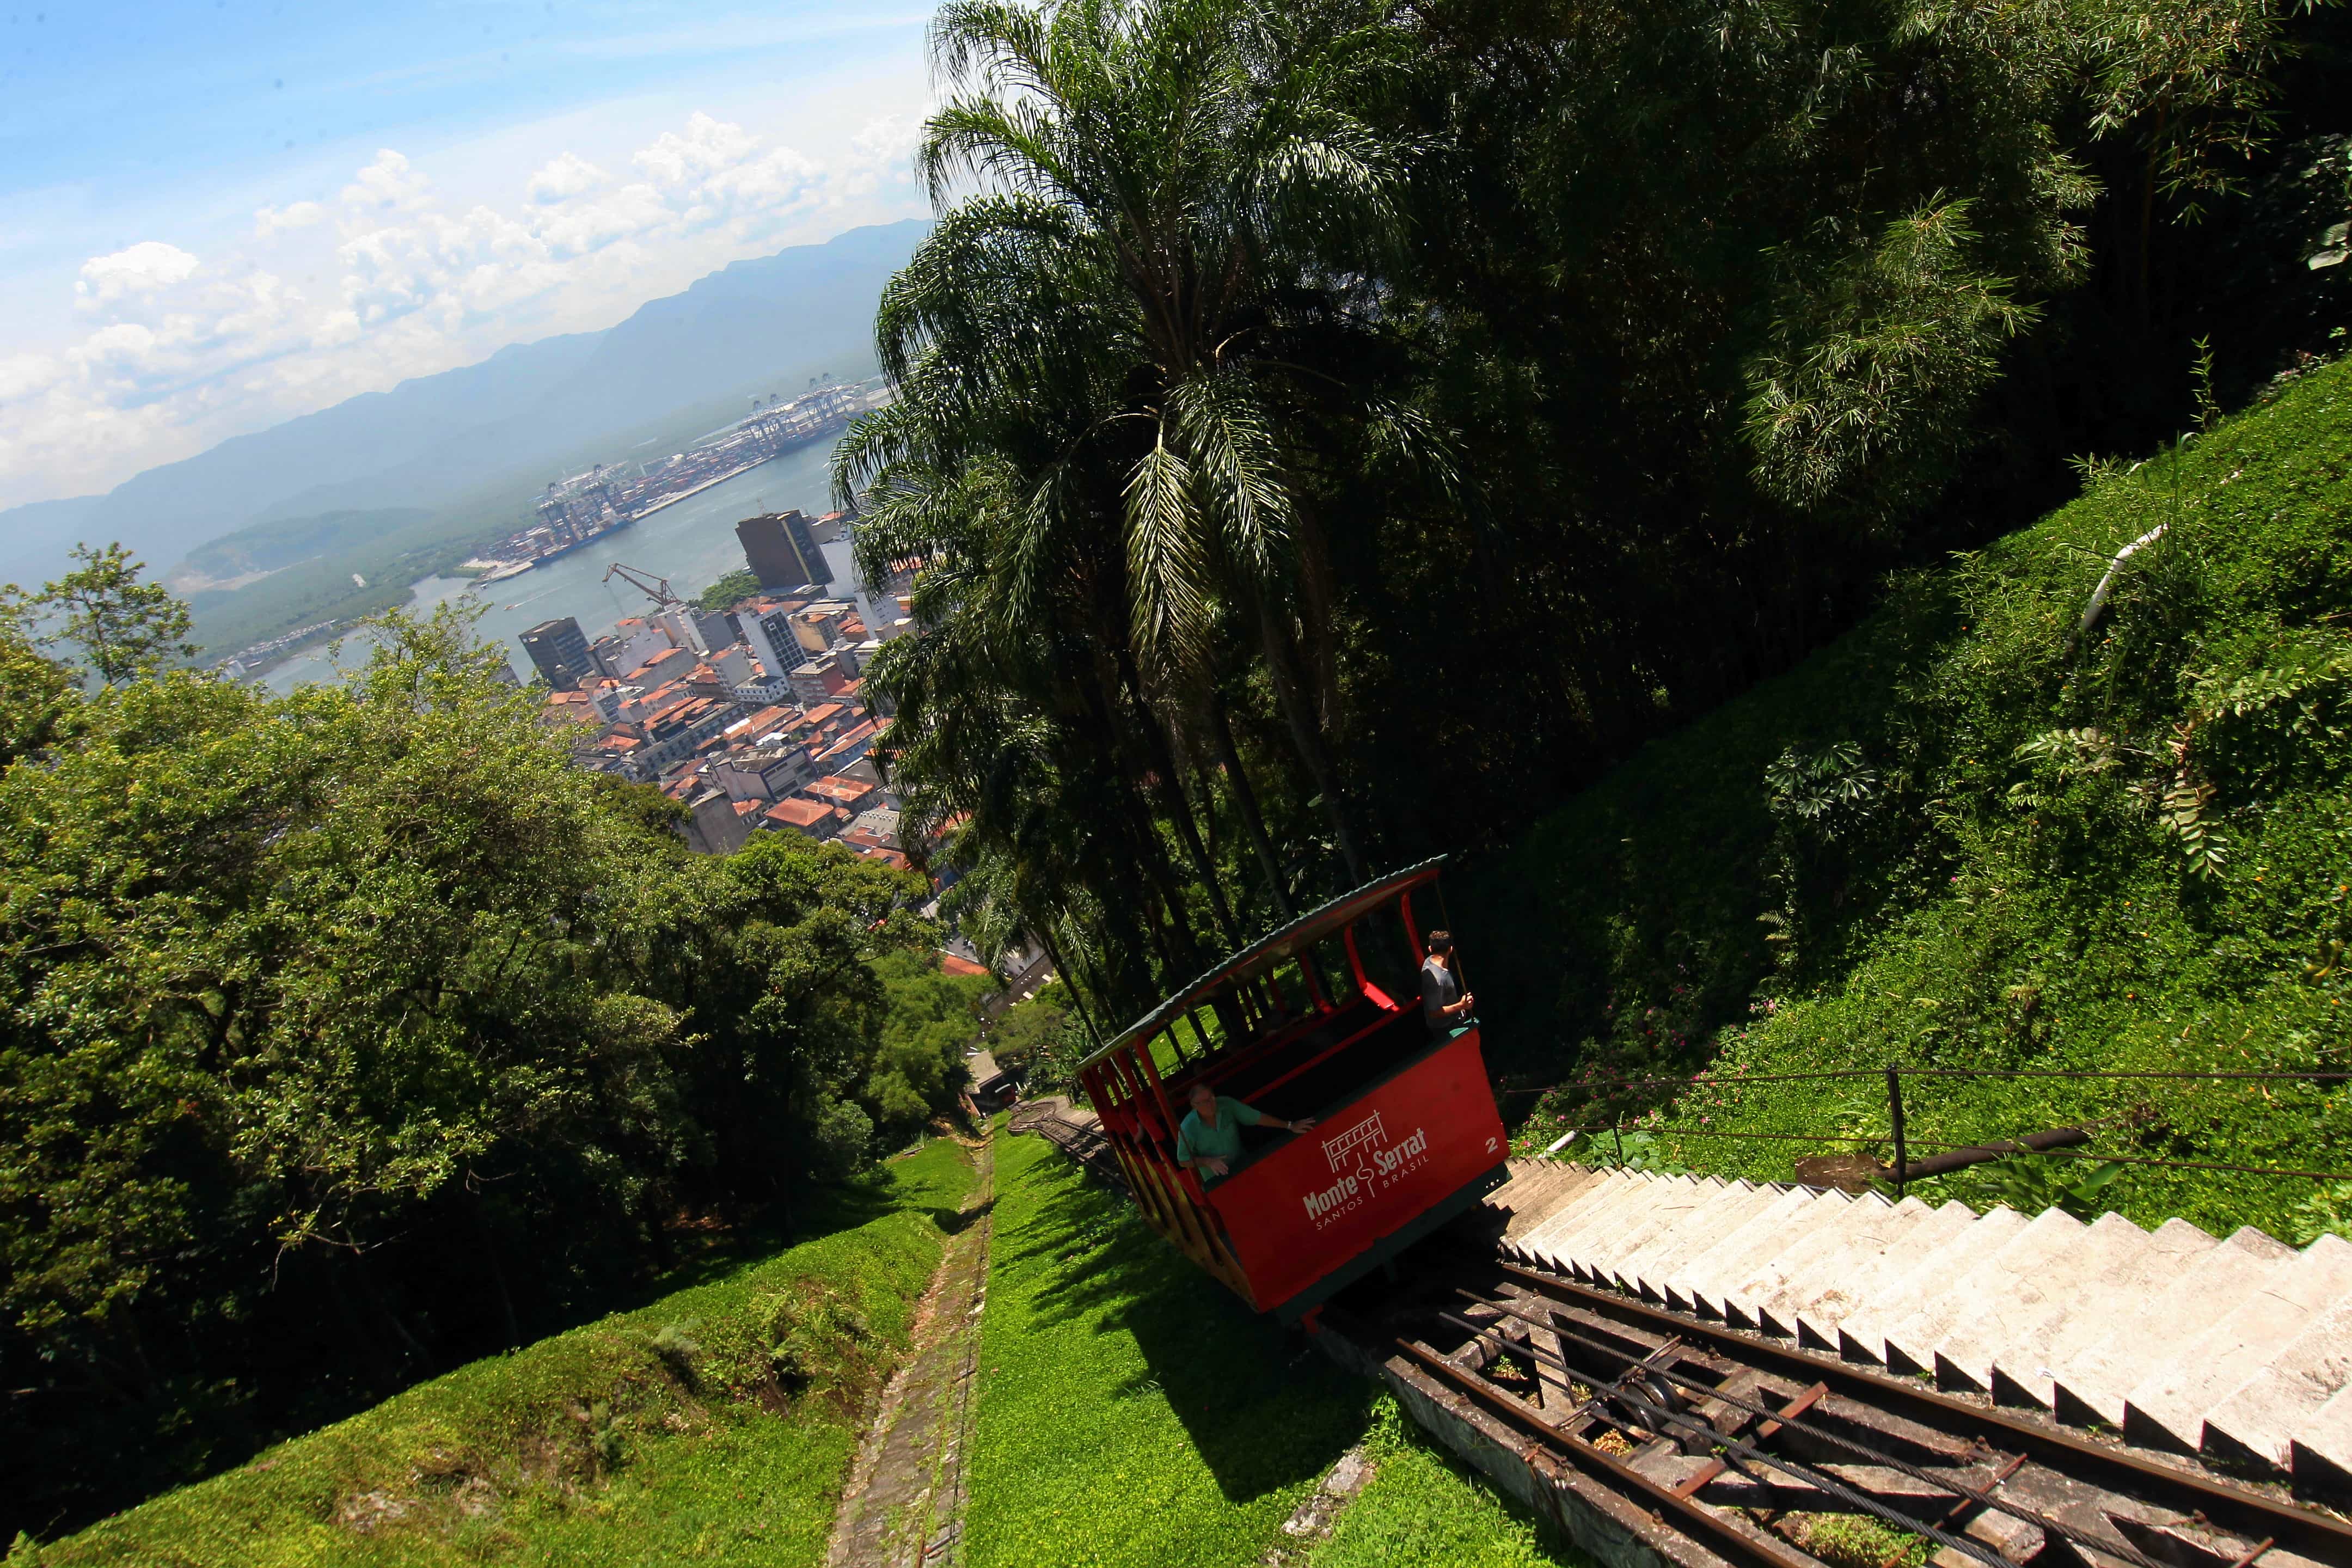 Bonde funicular transporta passageiros entre a base e o alto do morro 